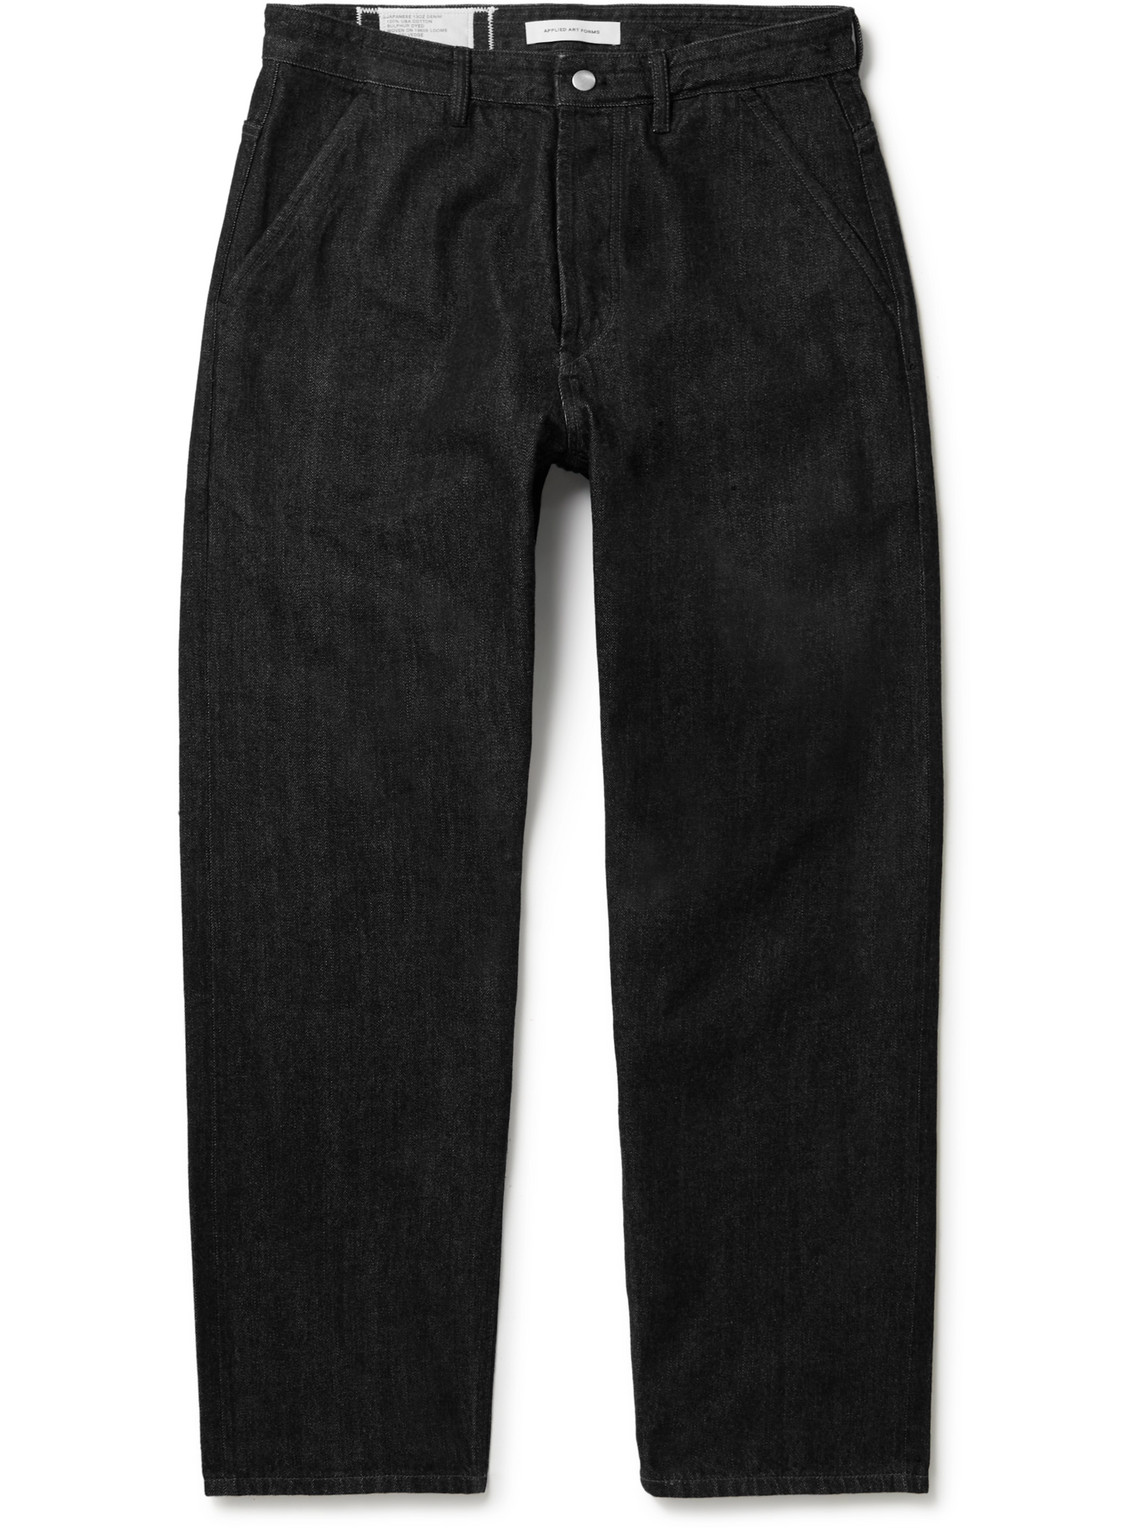 Applied Art Forms Dm2-2 Straight-leg Selvedge Jeans In Black